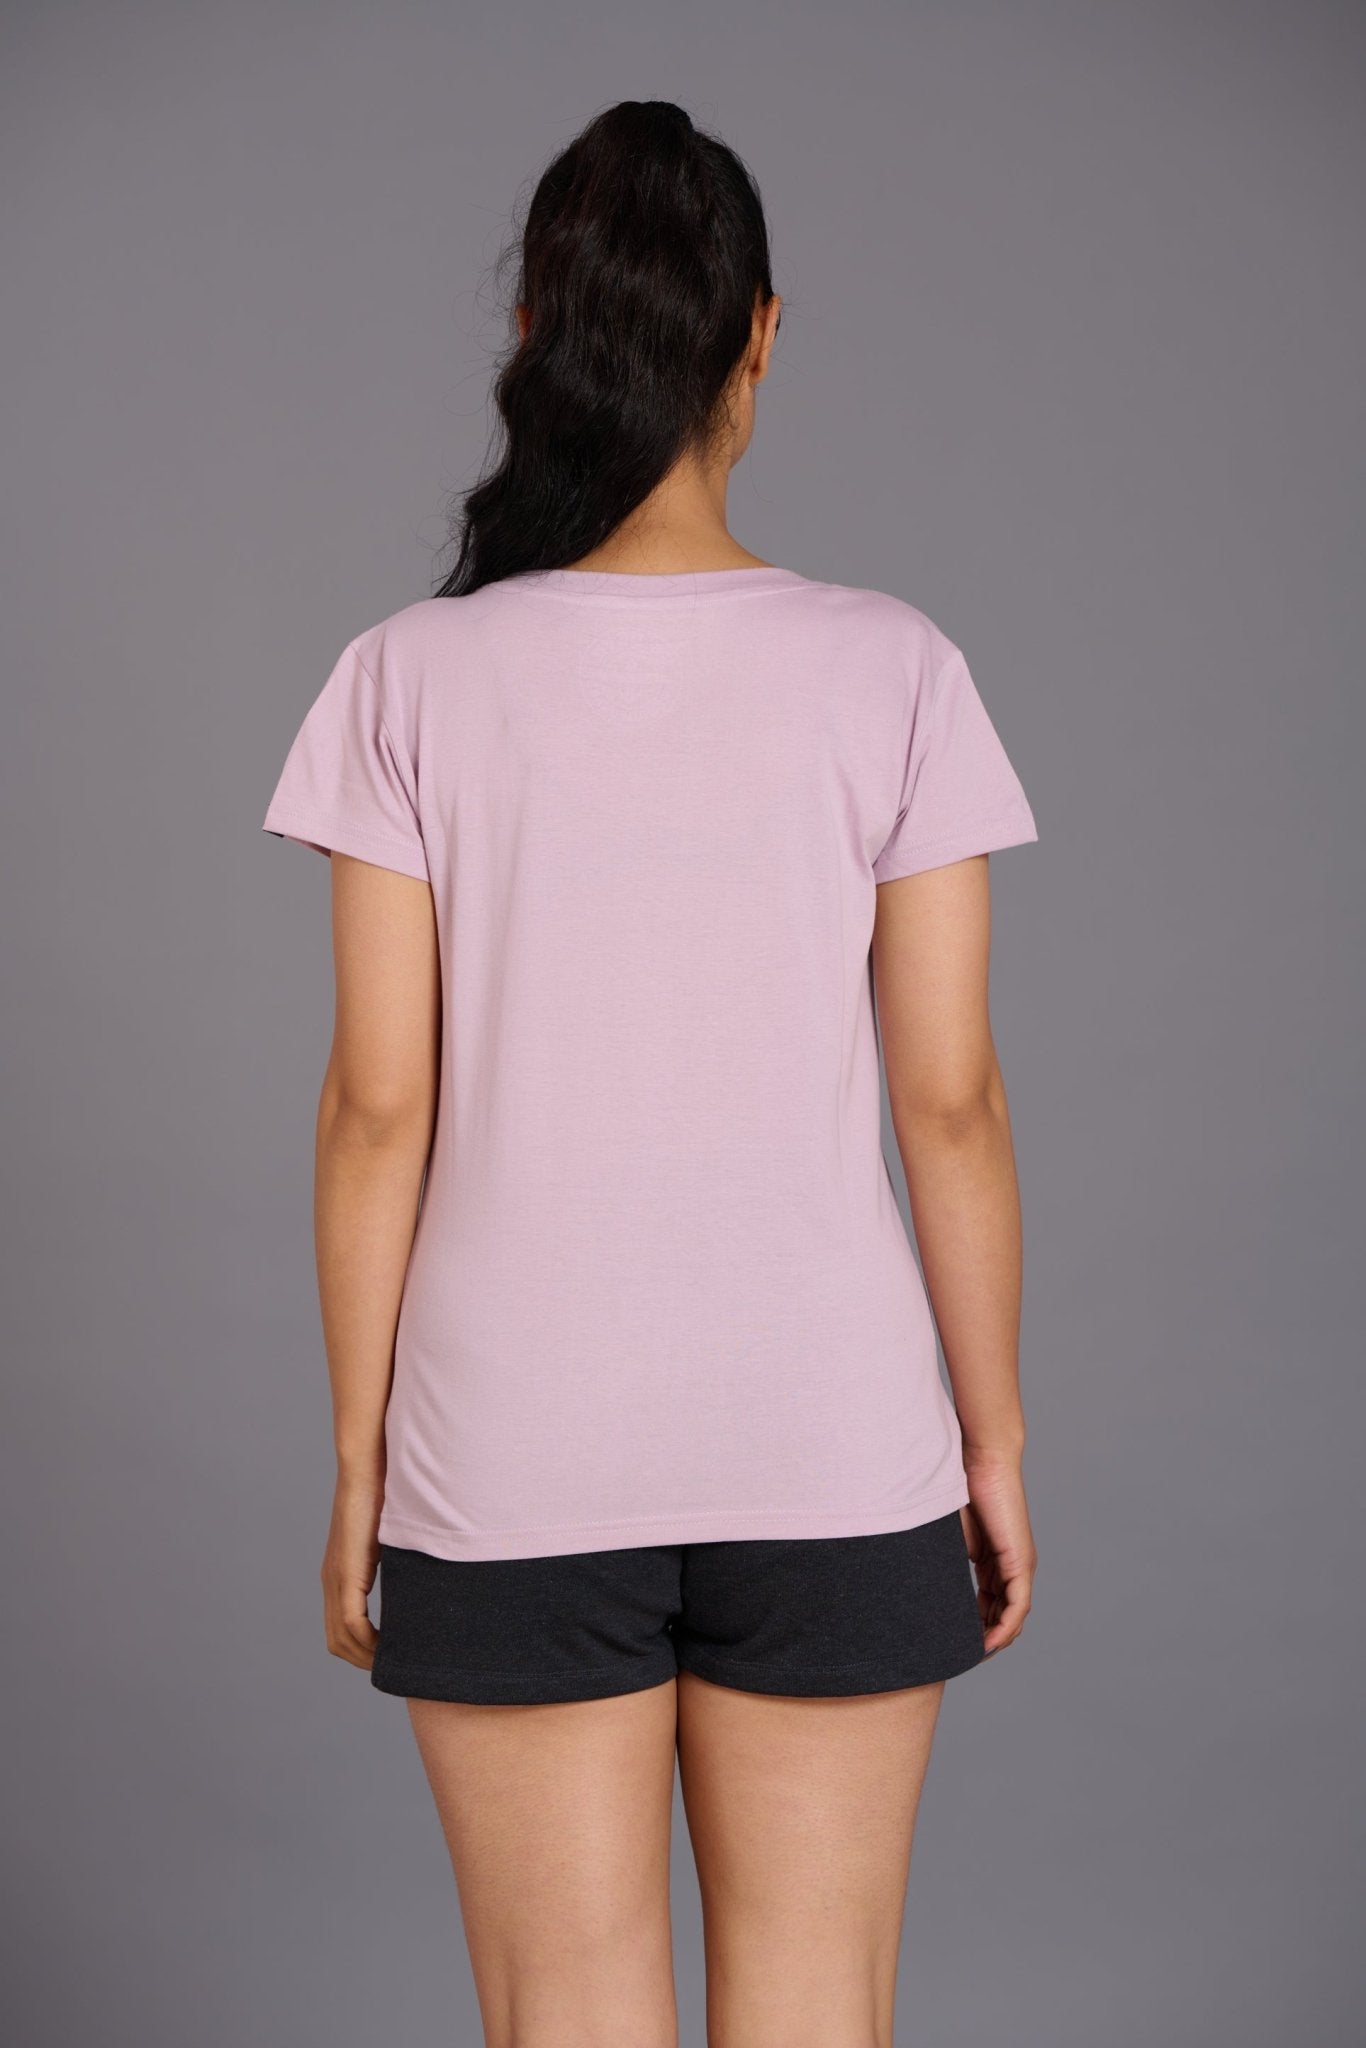 Lazy Bones Printed Lavender Oversized T-Shirt for Women - Go Devil